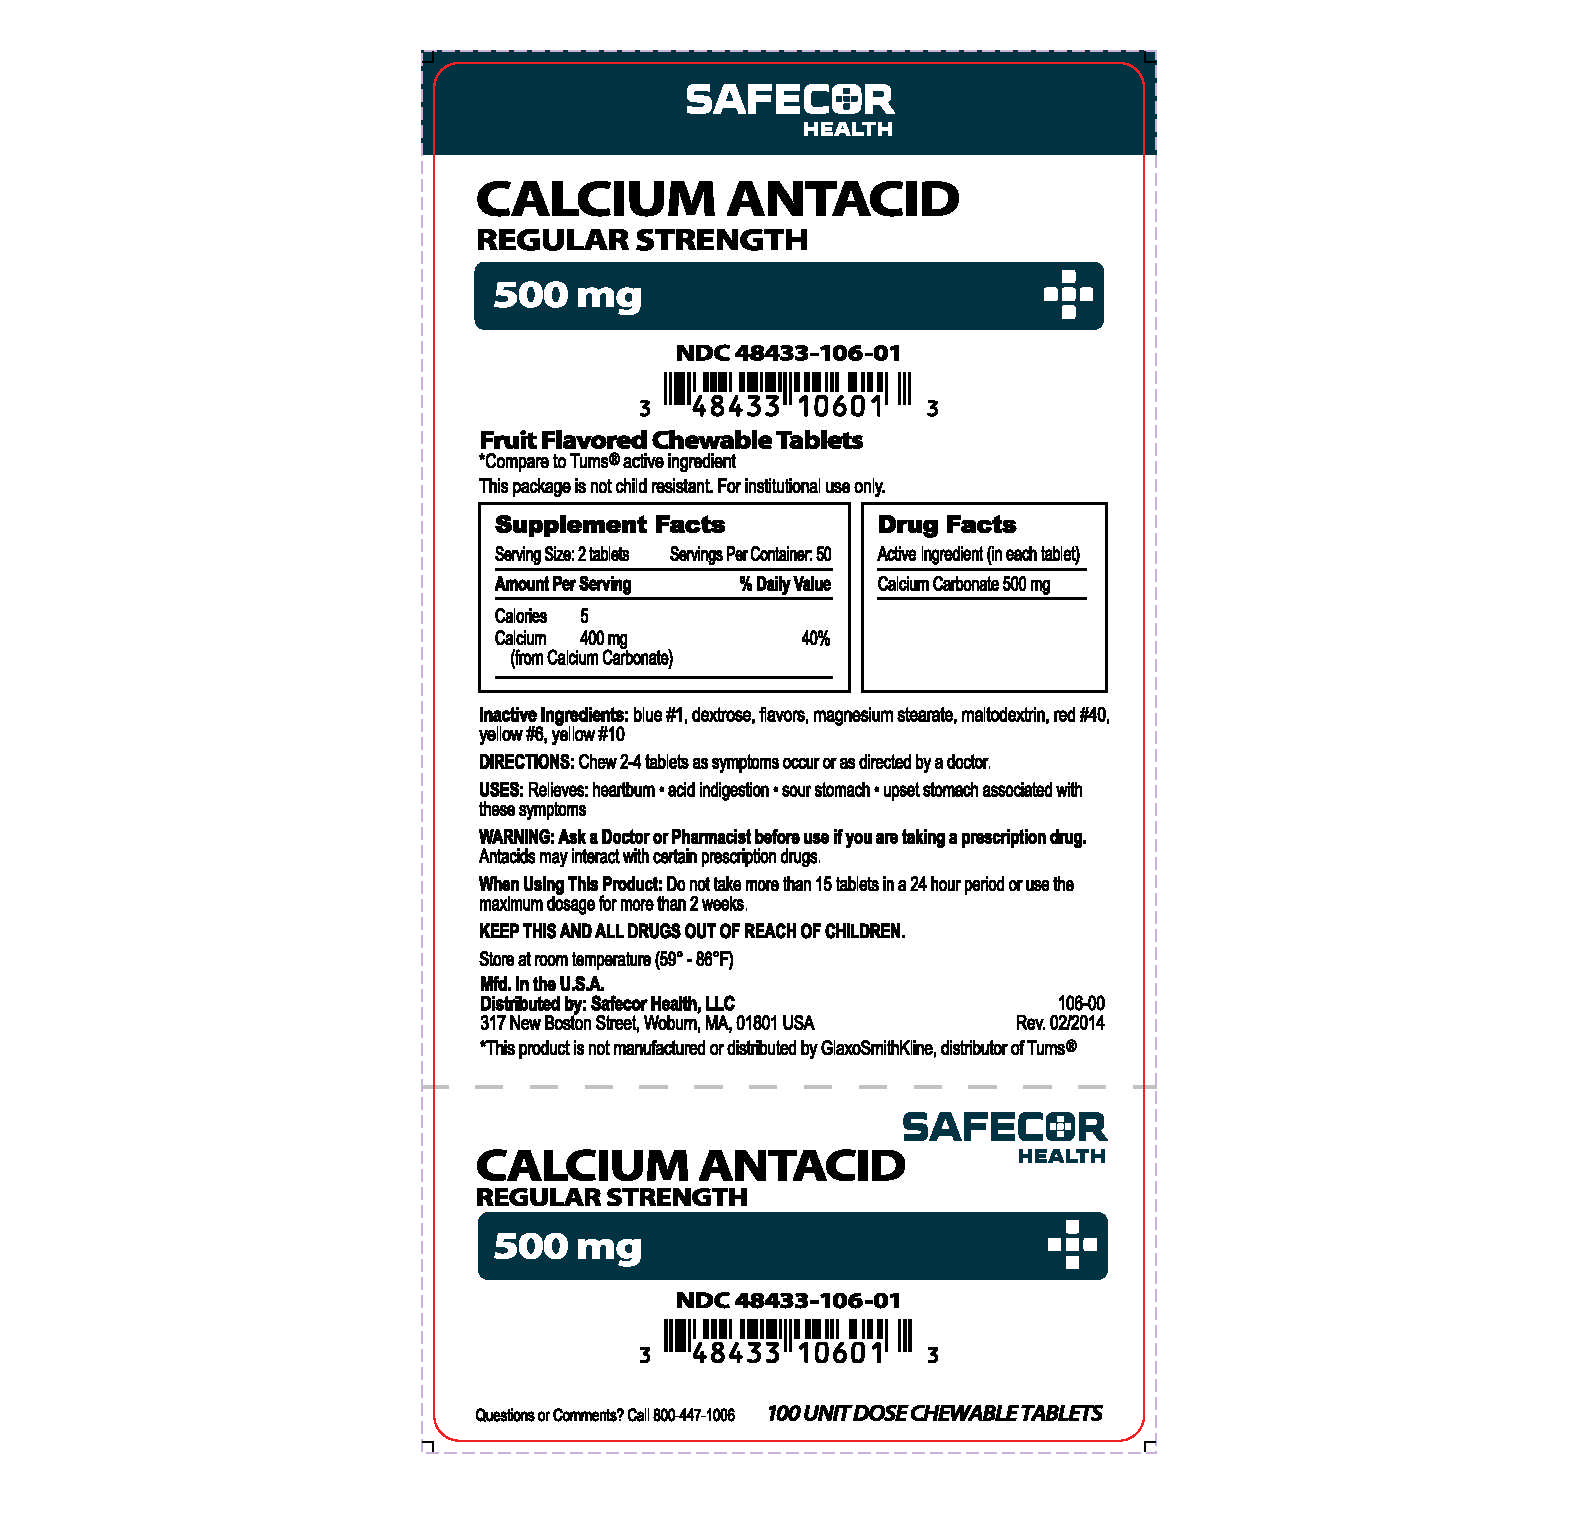 Calcium Antacid 500 mg Unit Dose Box Label